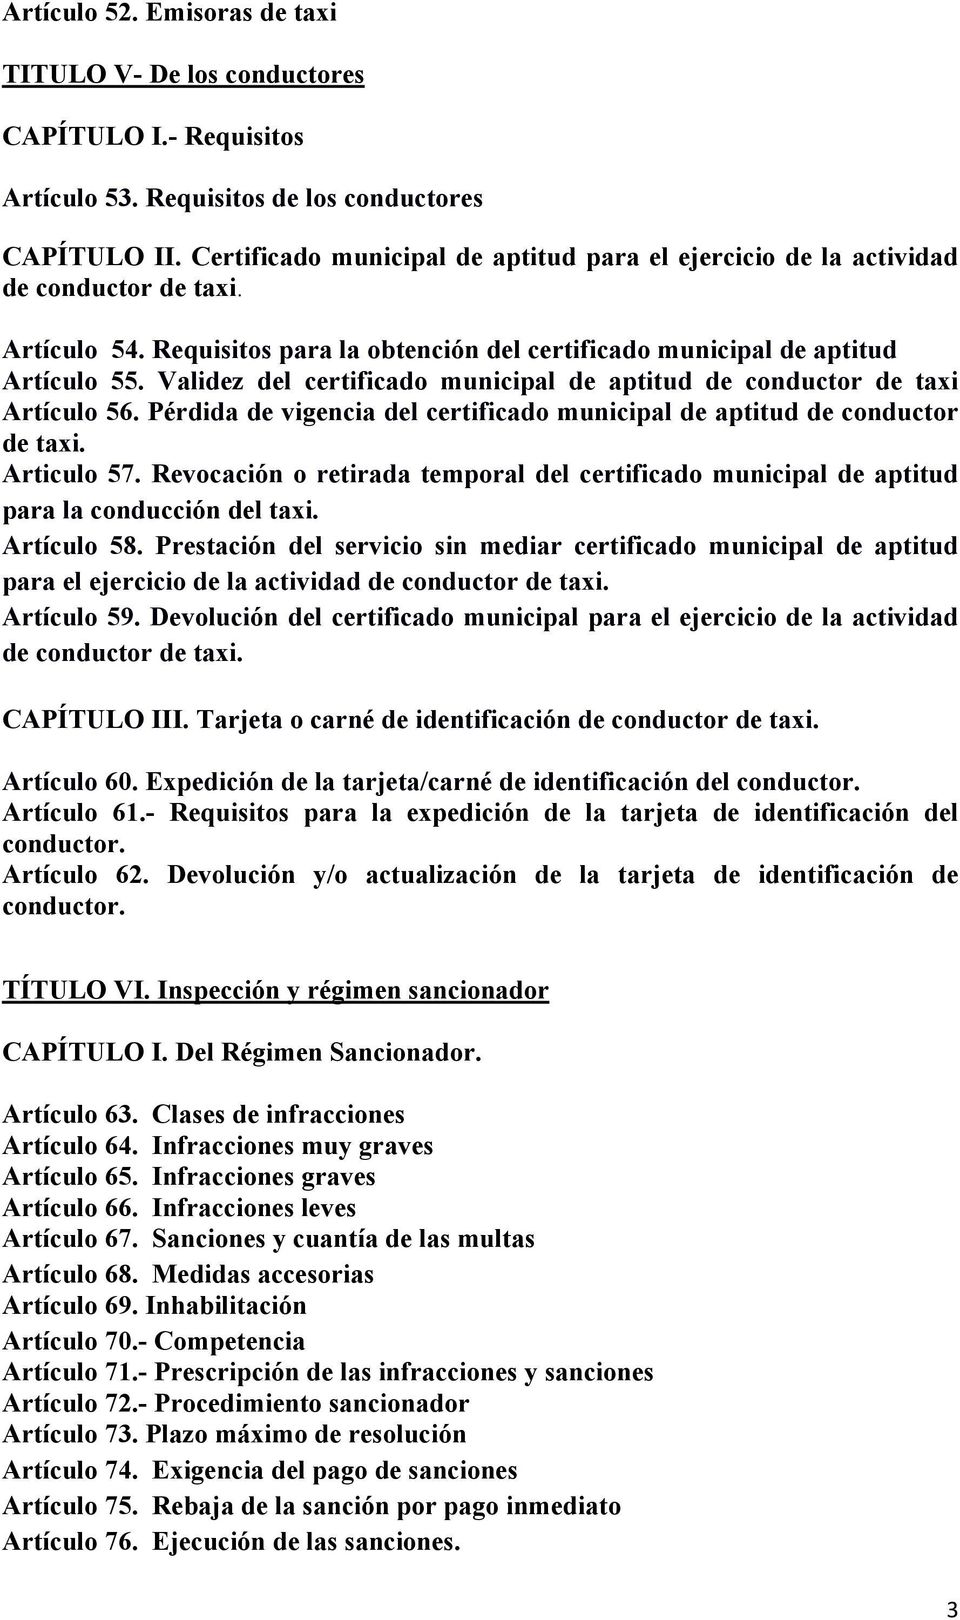 Validez del certificado municipal de aptitud de conductor de taxi Artículo 56. Pérdida de vigencia del certificado municipal de aptitud de conductor de taxi. Articulo 57.